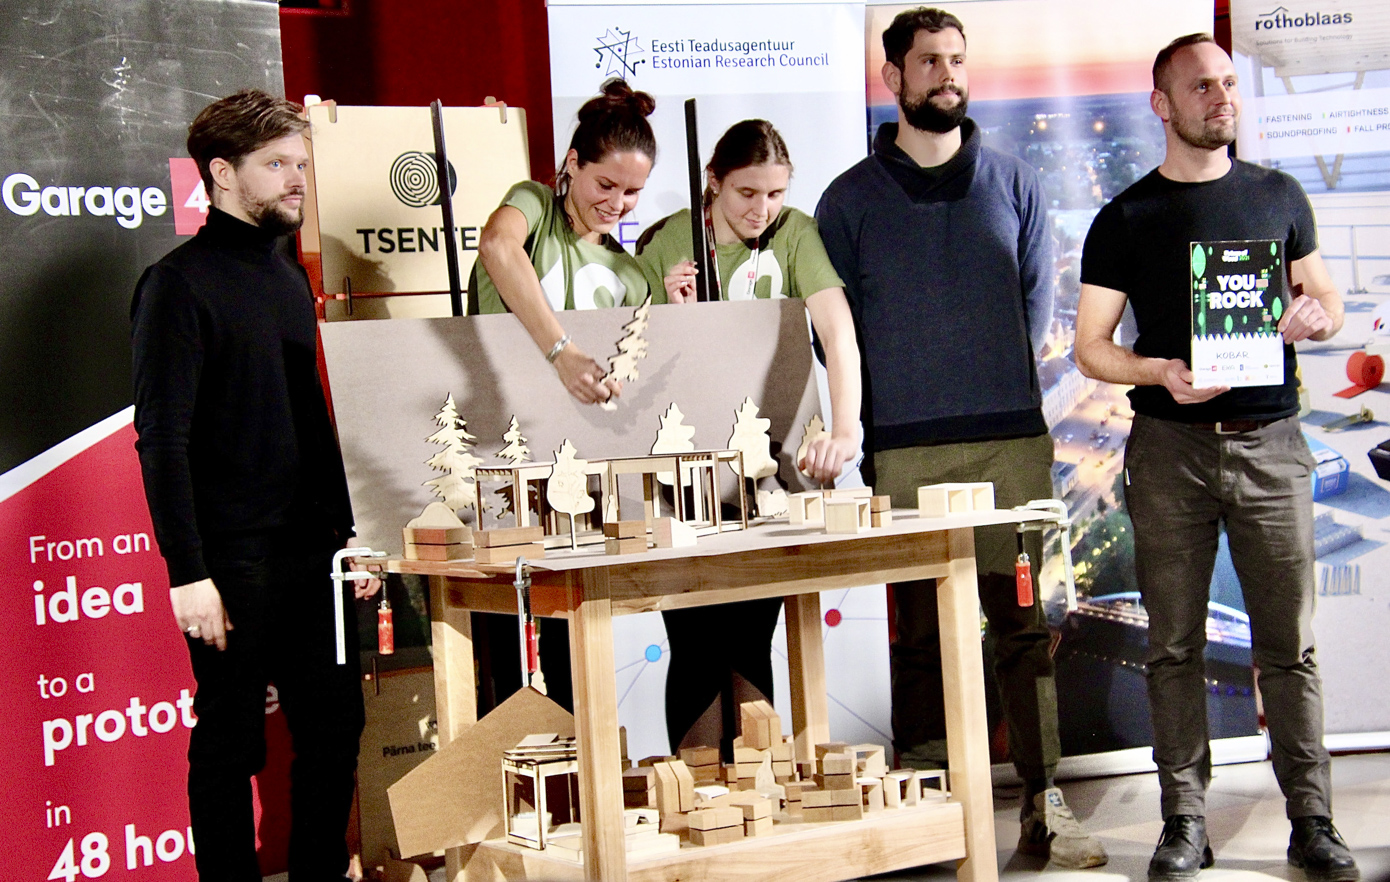 Häkatoni võitis tiim Kobar, kes töötas välja 369 Pattern Building Systemi moodulid, mis loovad uusi ruumilisi omadusi ja suurendavad valikut moodulehitisteks. Peale üldvõitja tiitli võitsid nad ka „369 Pattern Building System” ja  „Thermory puidukasutus linnaruumis” väljakutsed ning pälvisid Cleantech  Estonia eriauhinnana otsepääsu Climate Launchpadi esimese 20 tiimi hulka.  „Suutsime üritusel kokku tuua imelise tiimi, kus kõik said ennast tõestada.  Oleme tänulikud mentoritele nende abi, toetuse ja korralduse eest. Näeme projektil paljulubavaid võimalusi, seega arendame seda oma tiimiga edasi,” sõnas  tiimiliige Tatjana Štšurikova võidu järel.